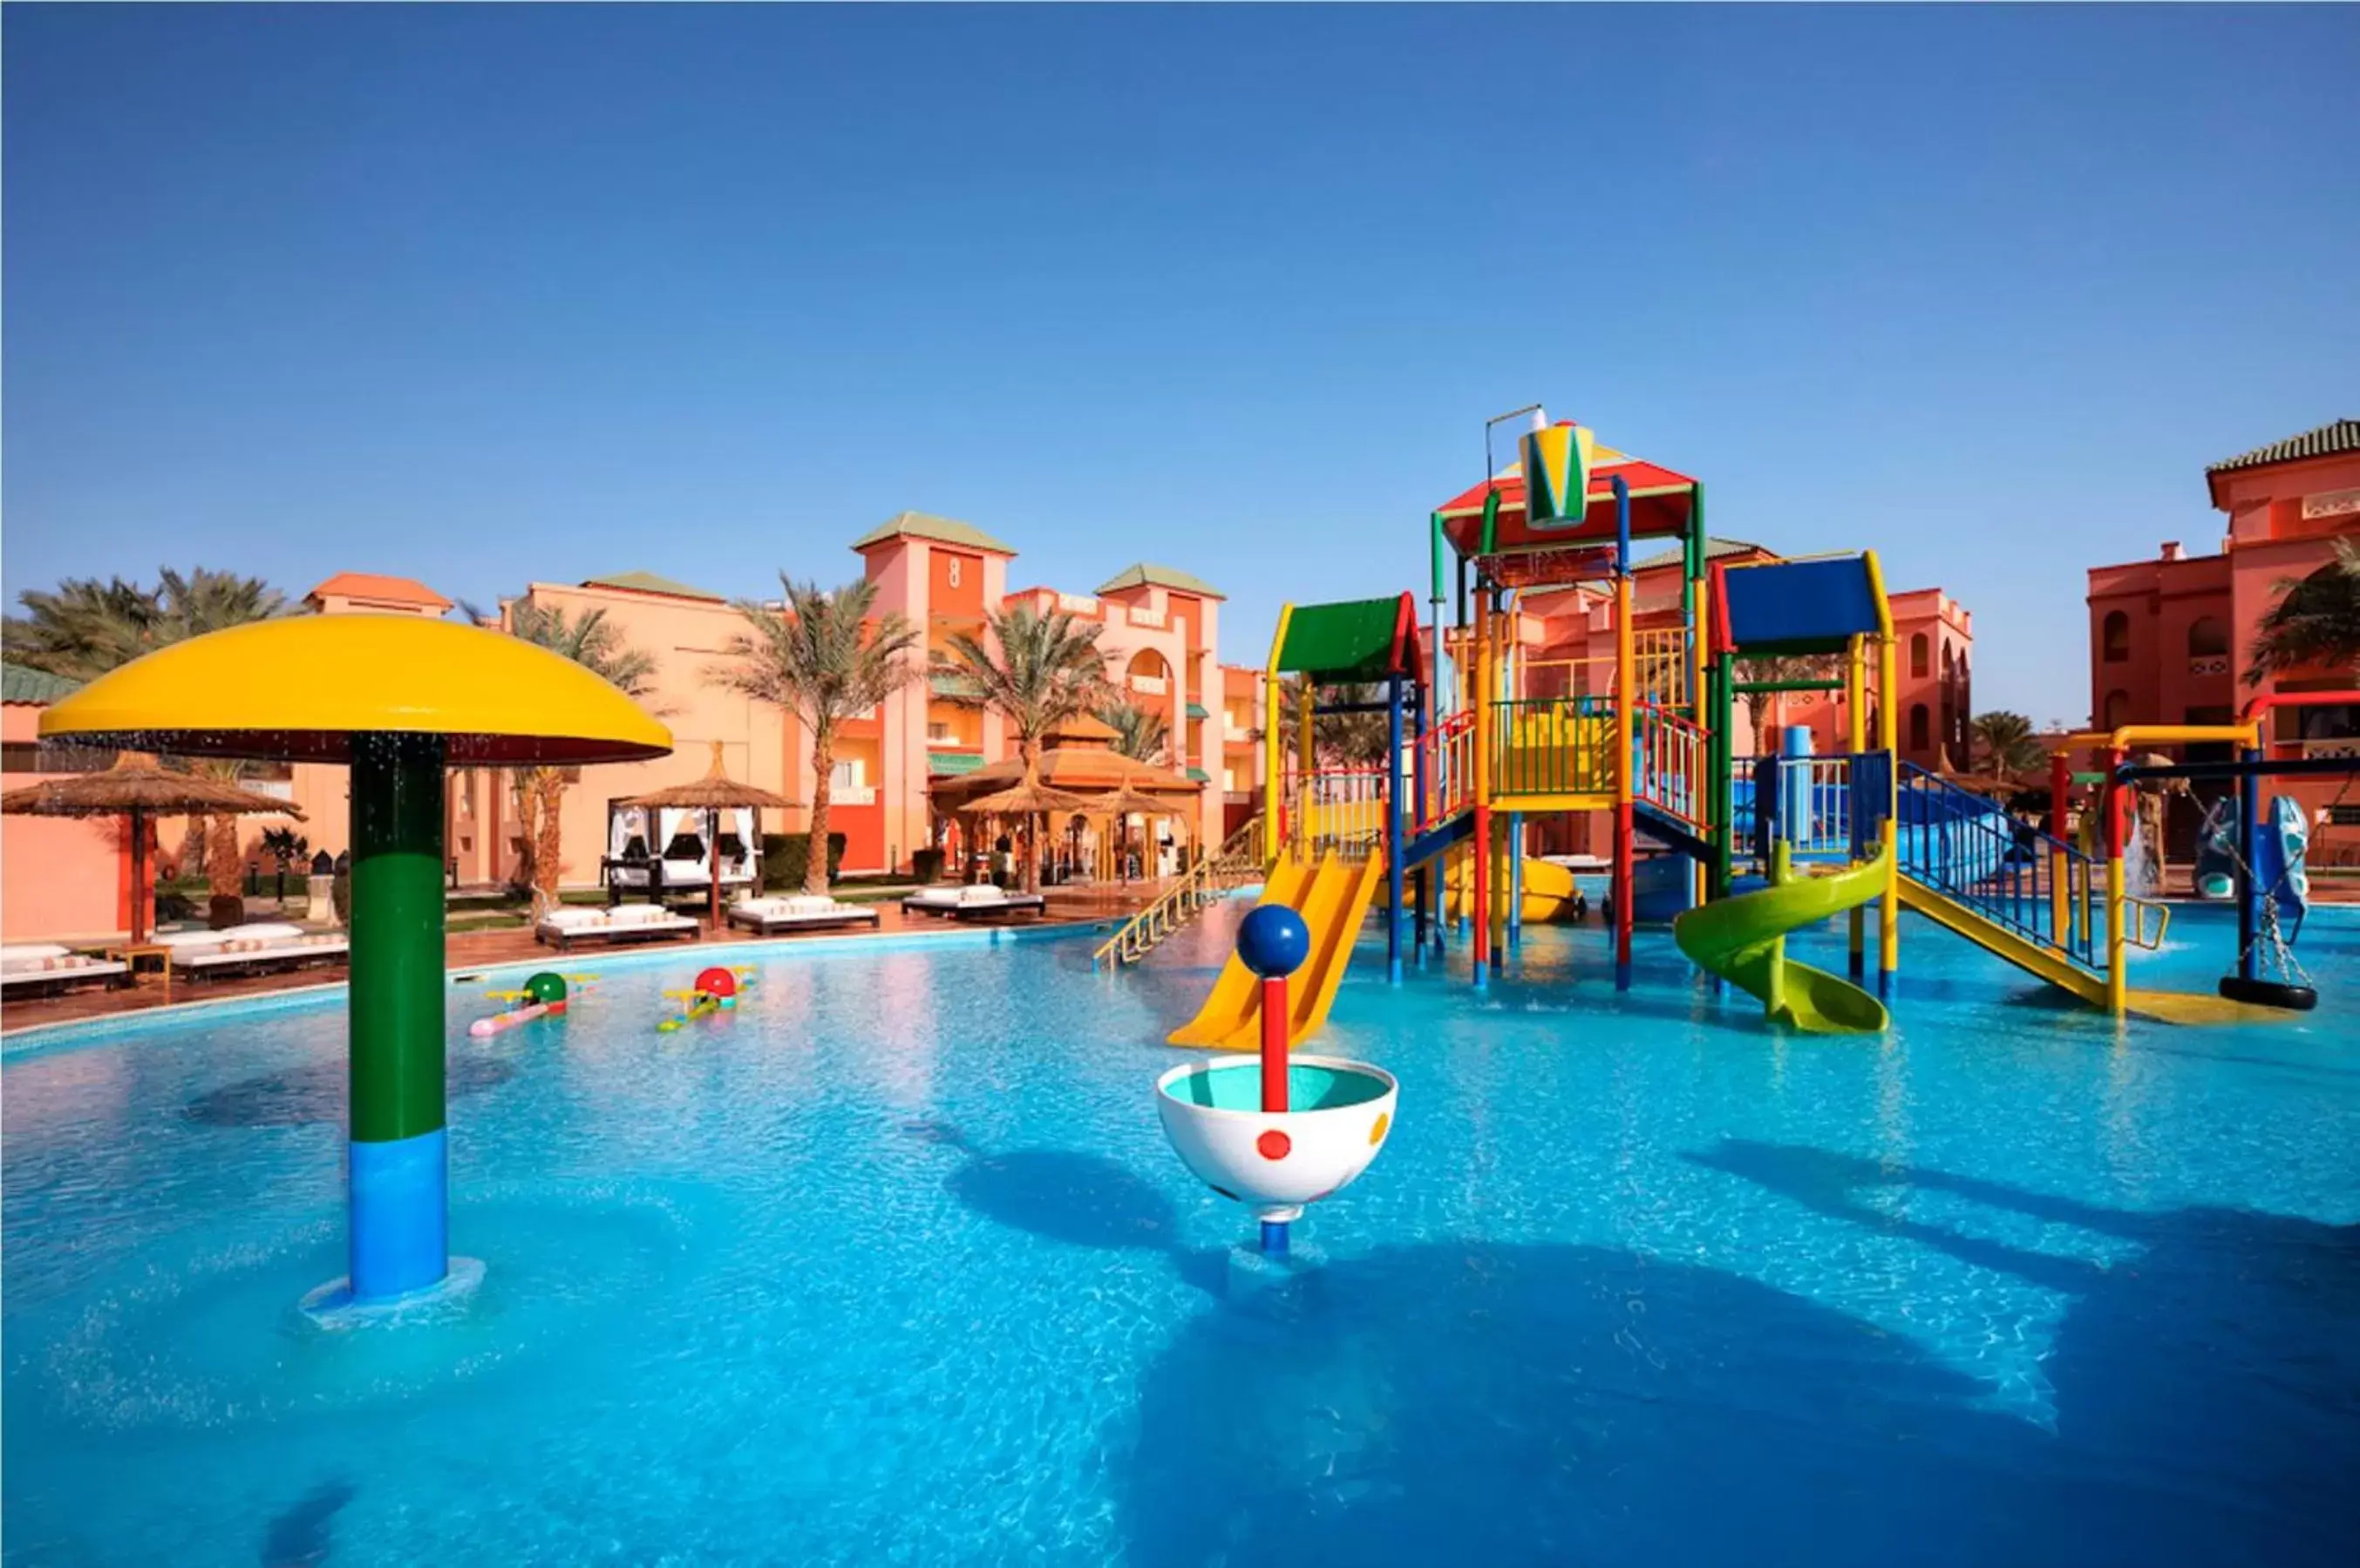 Aqua park in Pickalbatros Aqua Park Resort - Hurghada